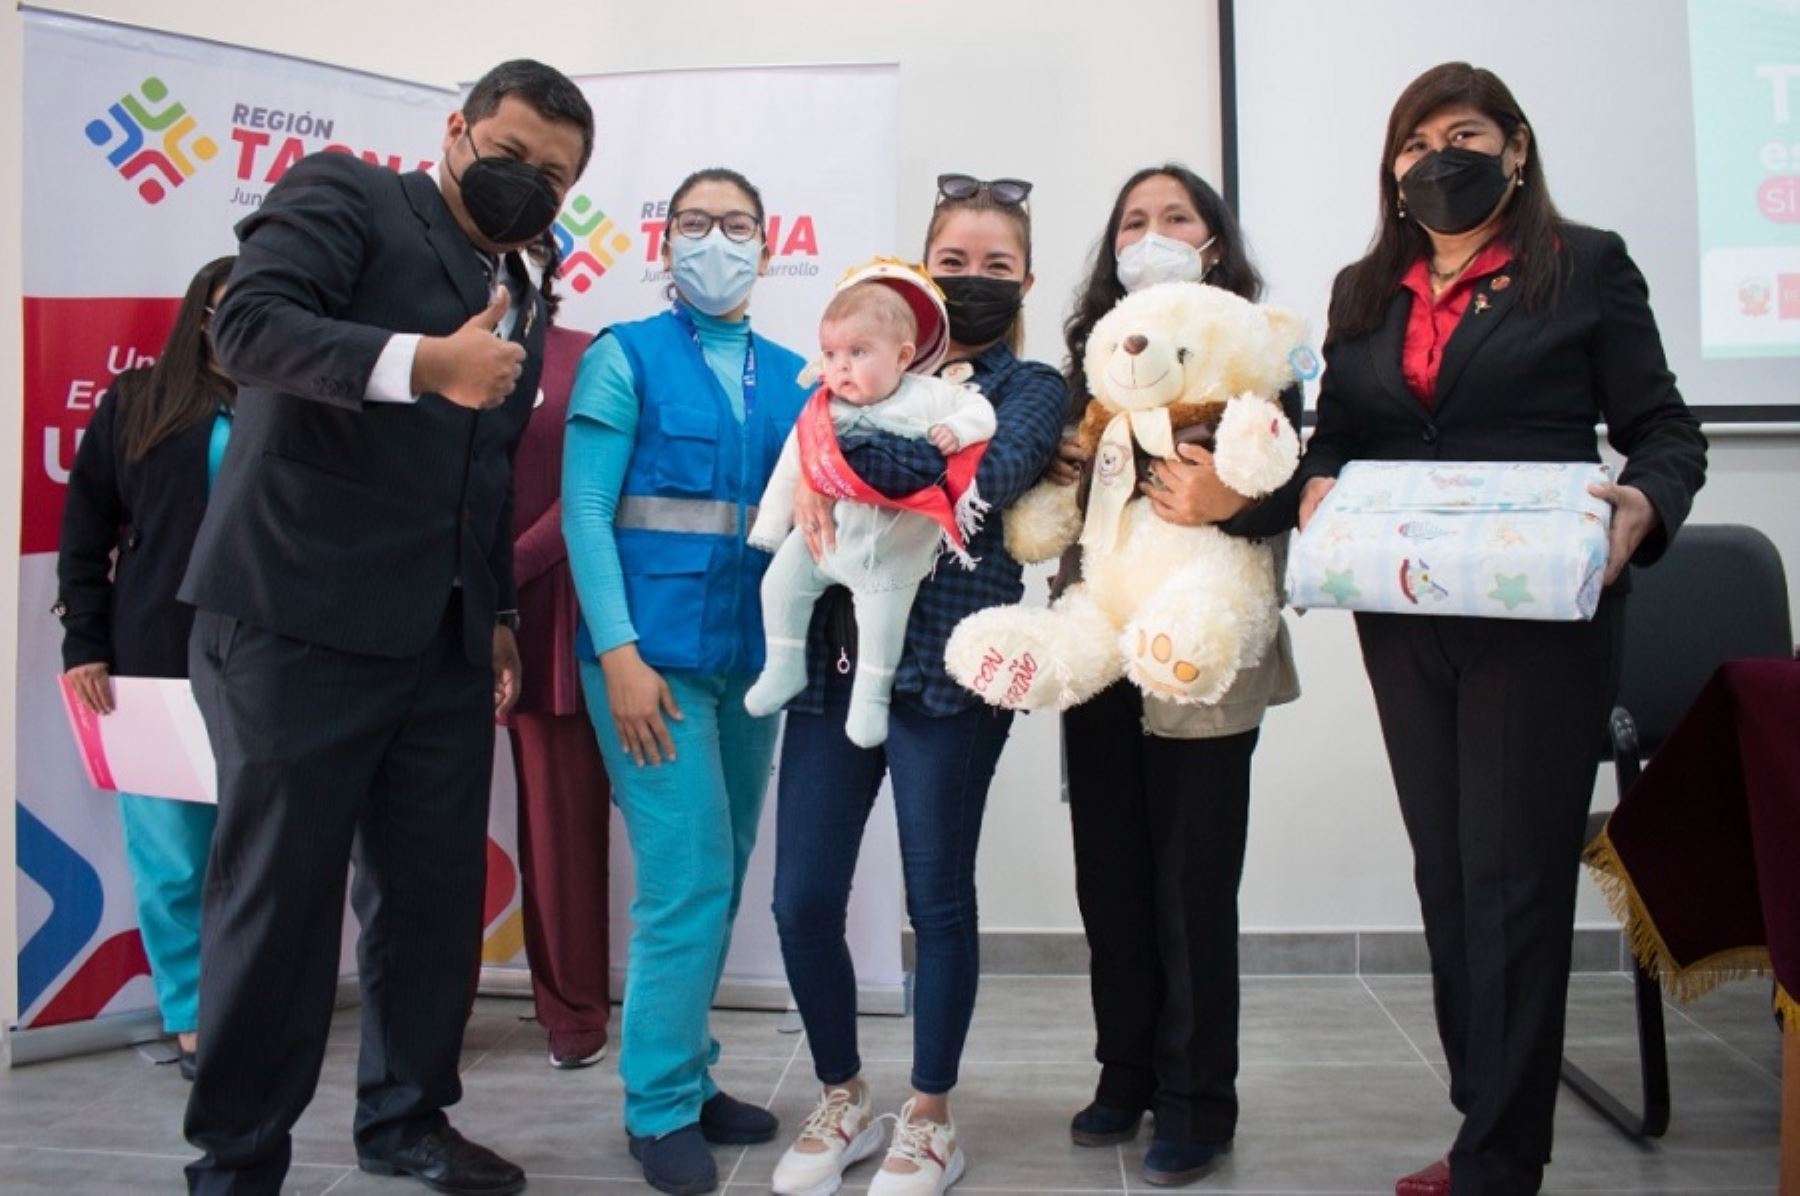 Como parte de las actividades por la Semana Nacional de Lactancia Materna, la Dirección Regional de Salud de Tacna llevó a cabo el concurso regional “Bebé mamoncito campeón de campeones”, cuyo objetivo es promover la lactancia exclusiva en bebés menores de 6 meses de nacidos.